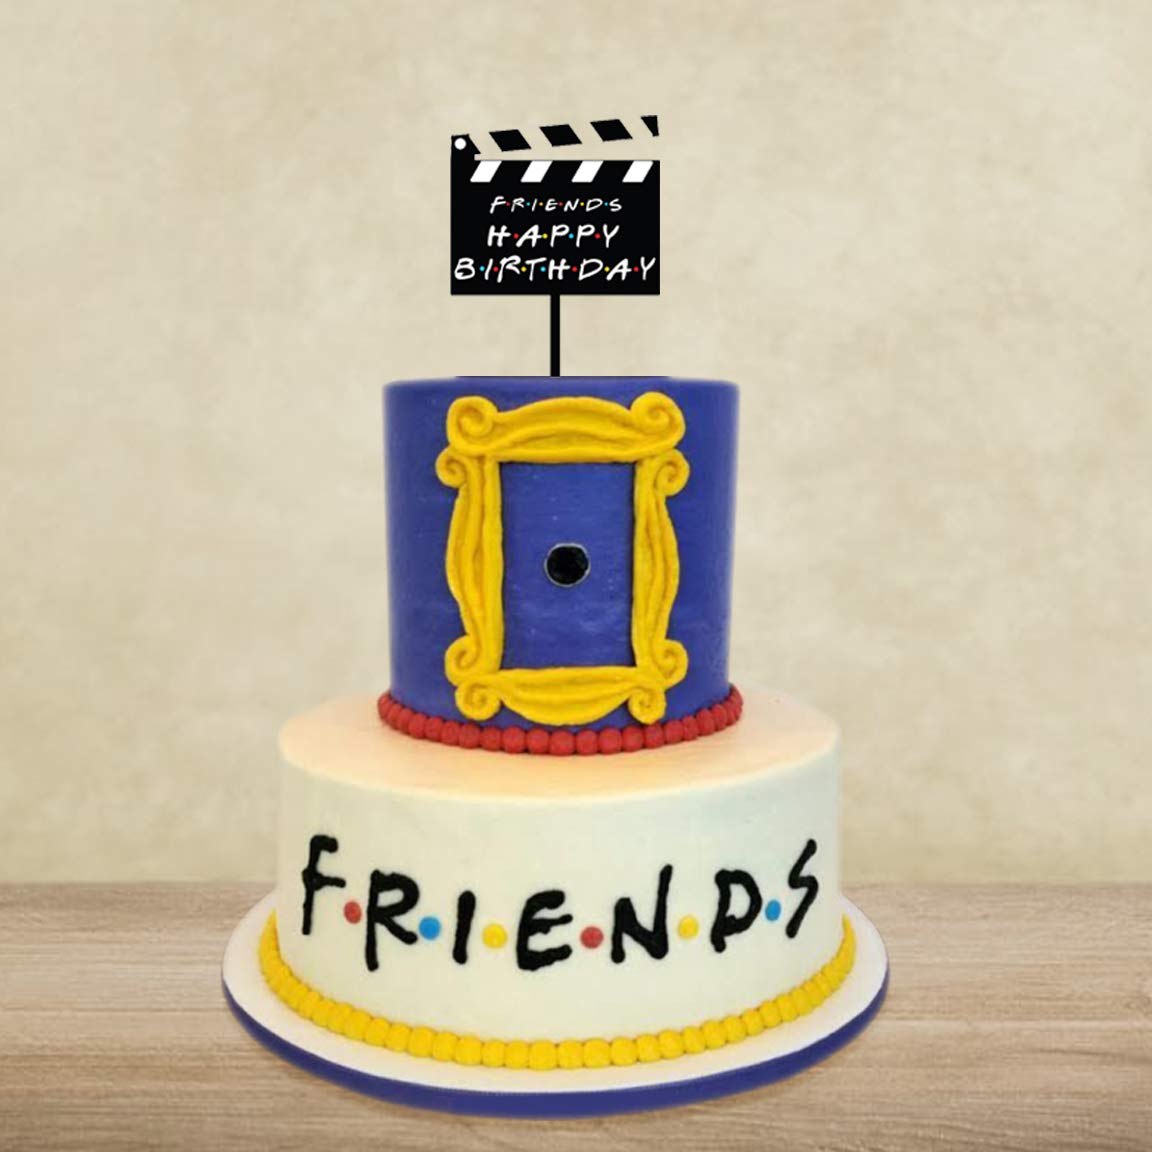 Best Friends Theme Cake In Hyderabad | Order Online